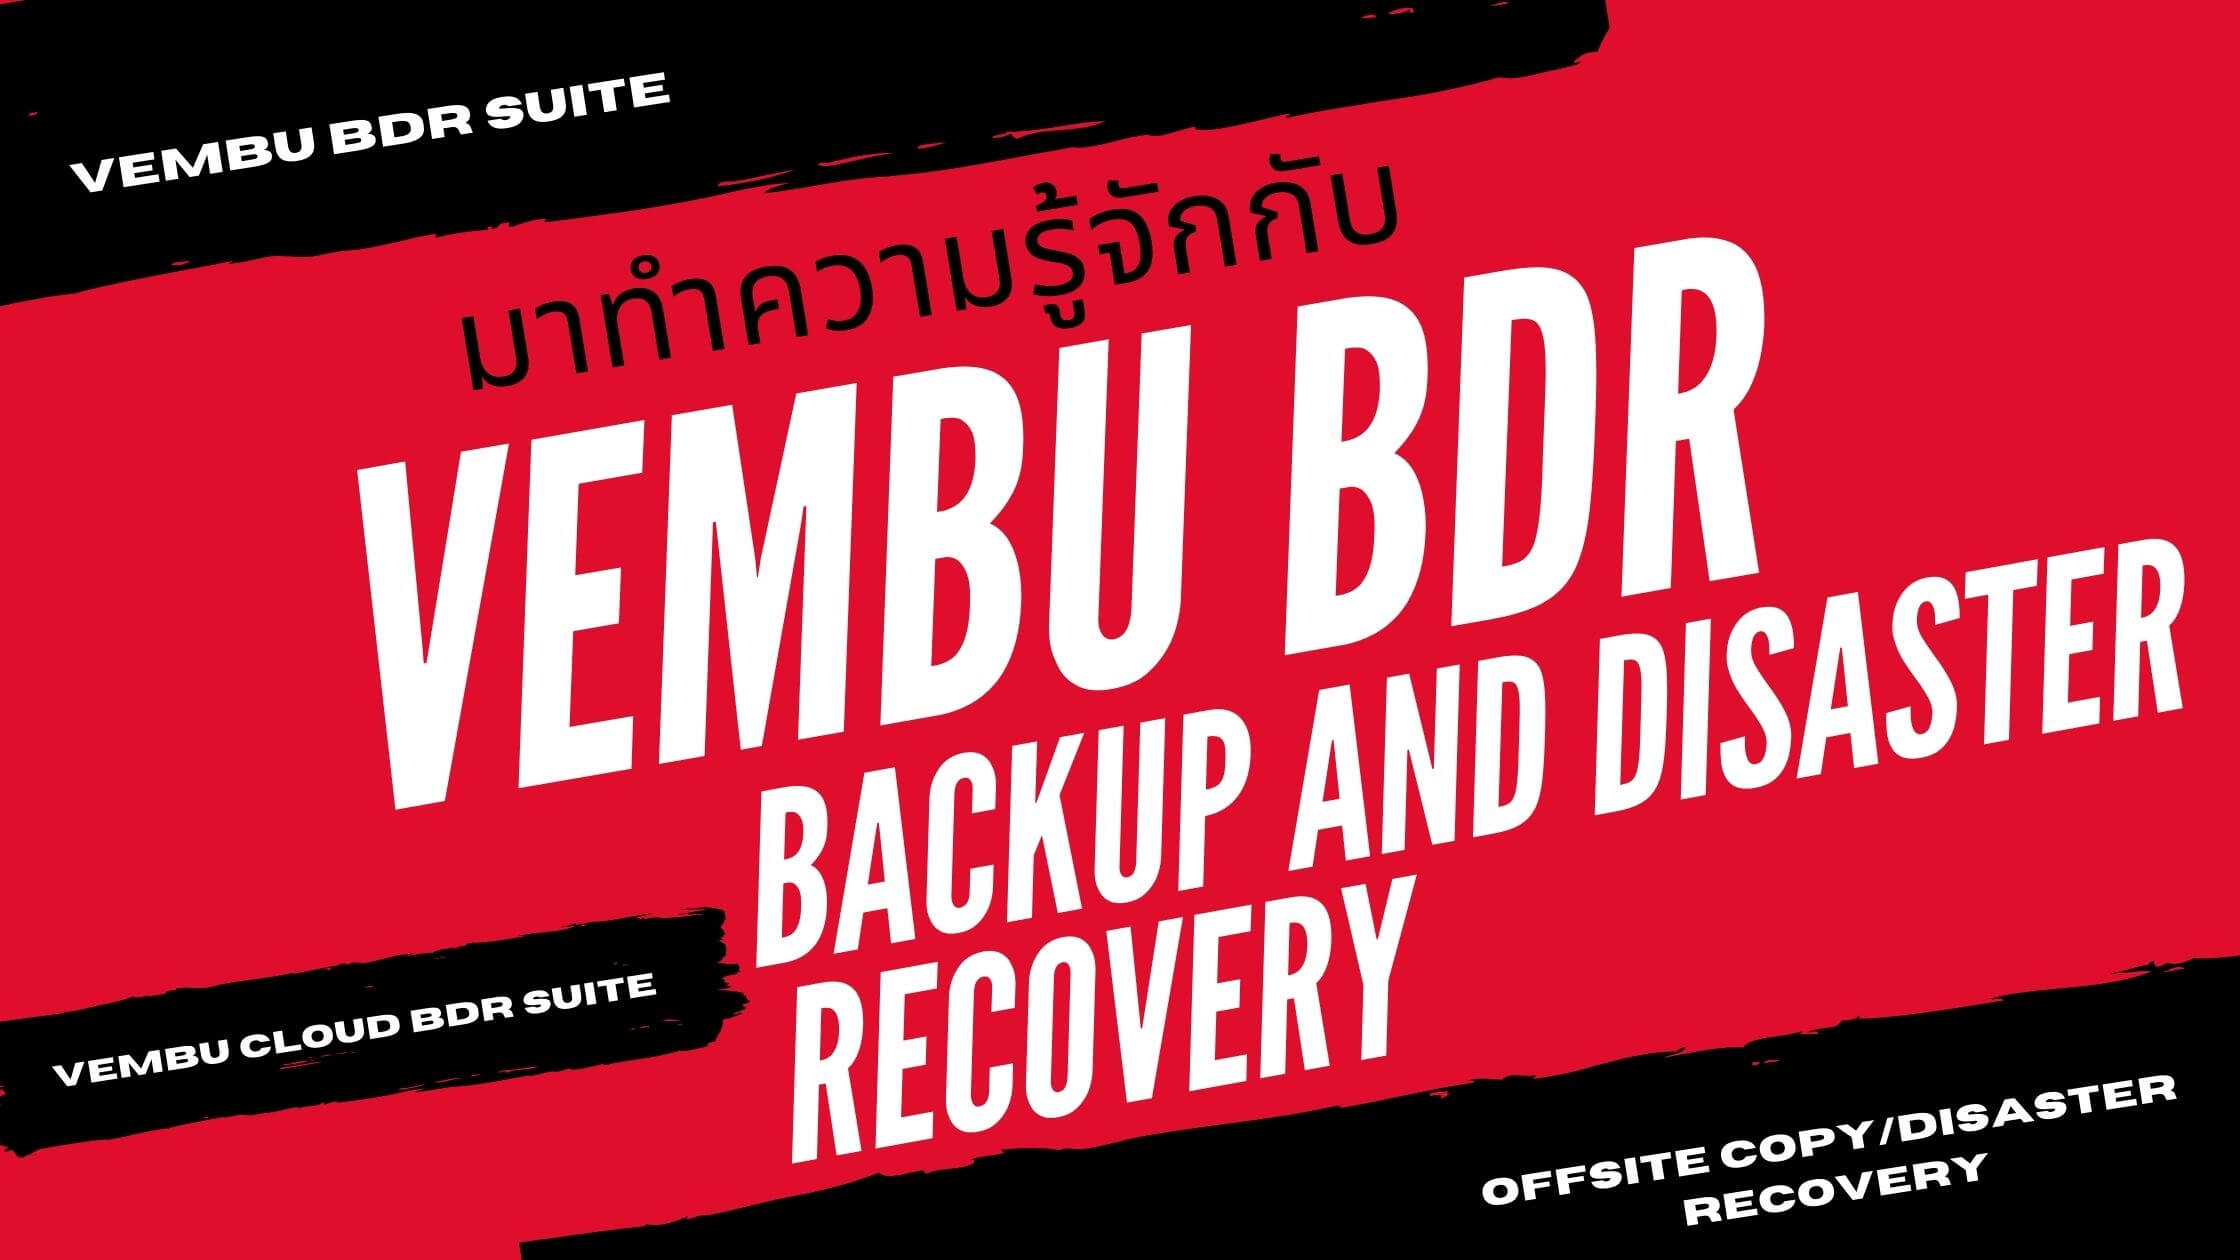 ทำความรู้จักกับ Vembu BDR น้องใหม่ด้าน Backup and Disaster Recovery  กันดีกว่า